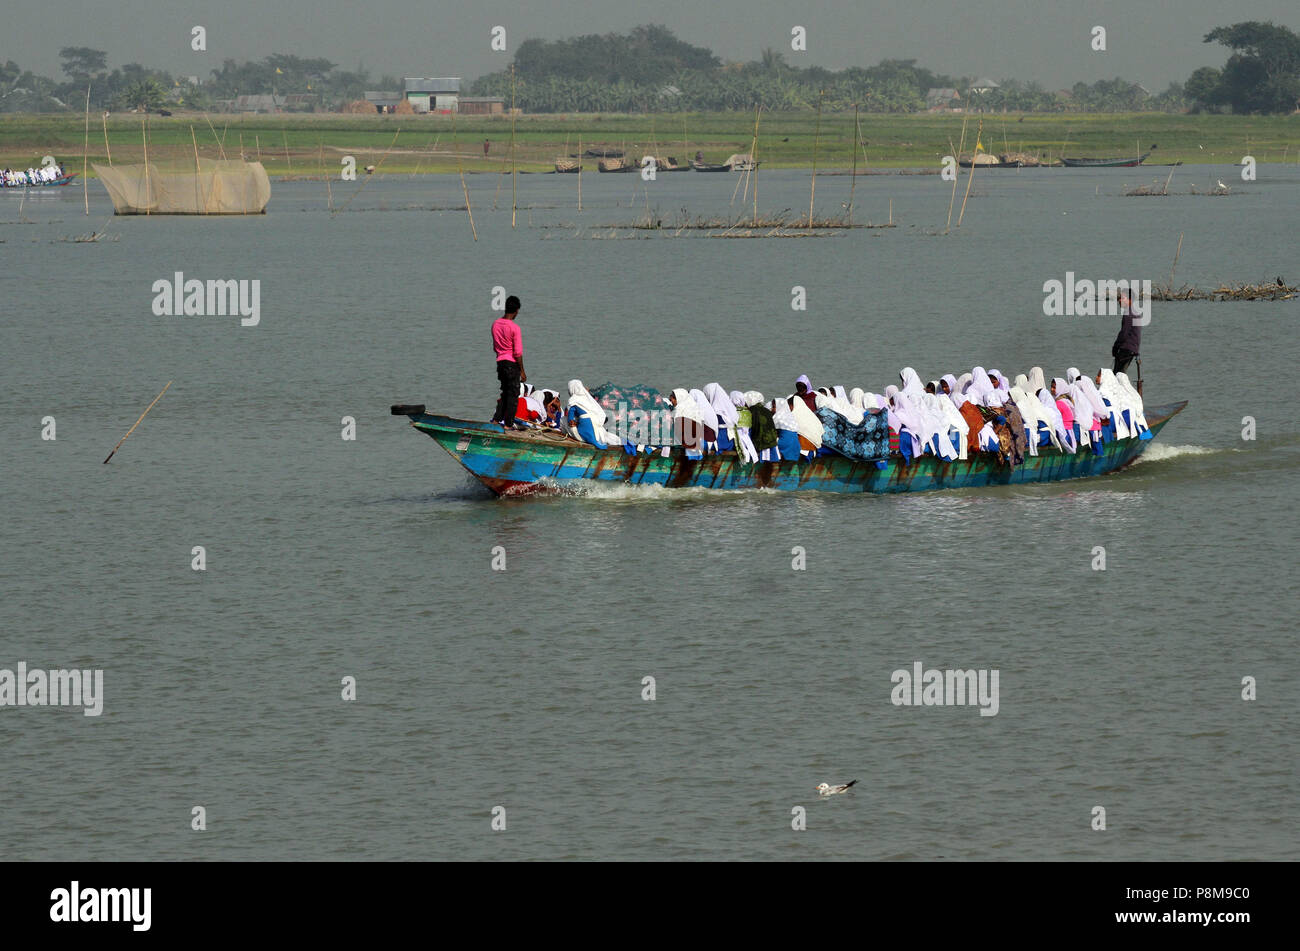 Shariyatpur, Bangladesh - 12 janvier 2015 : un bateau plein de personnes, essentiellement des étudiants, est réglé pour traverser la rivière Padma de zone Shariyatpur. Mettre thei Banque D'Images